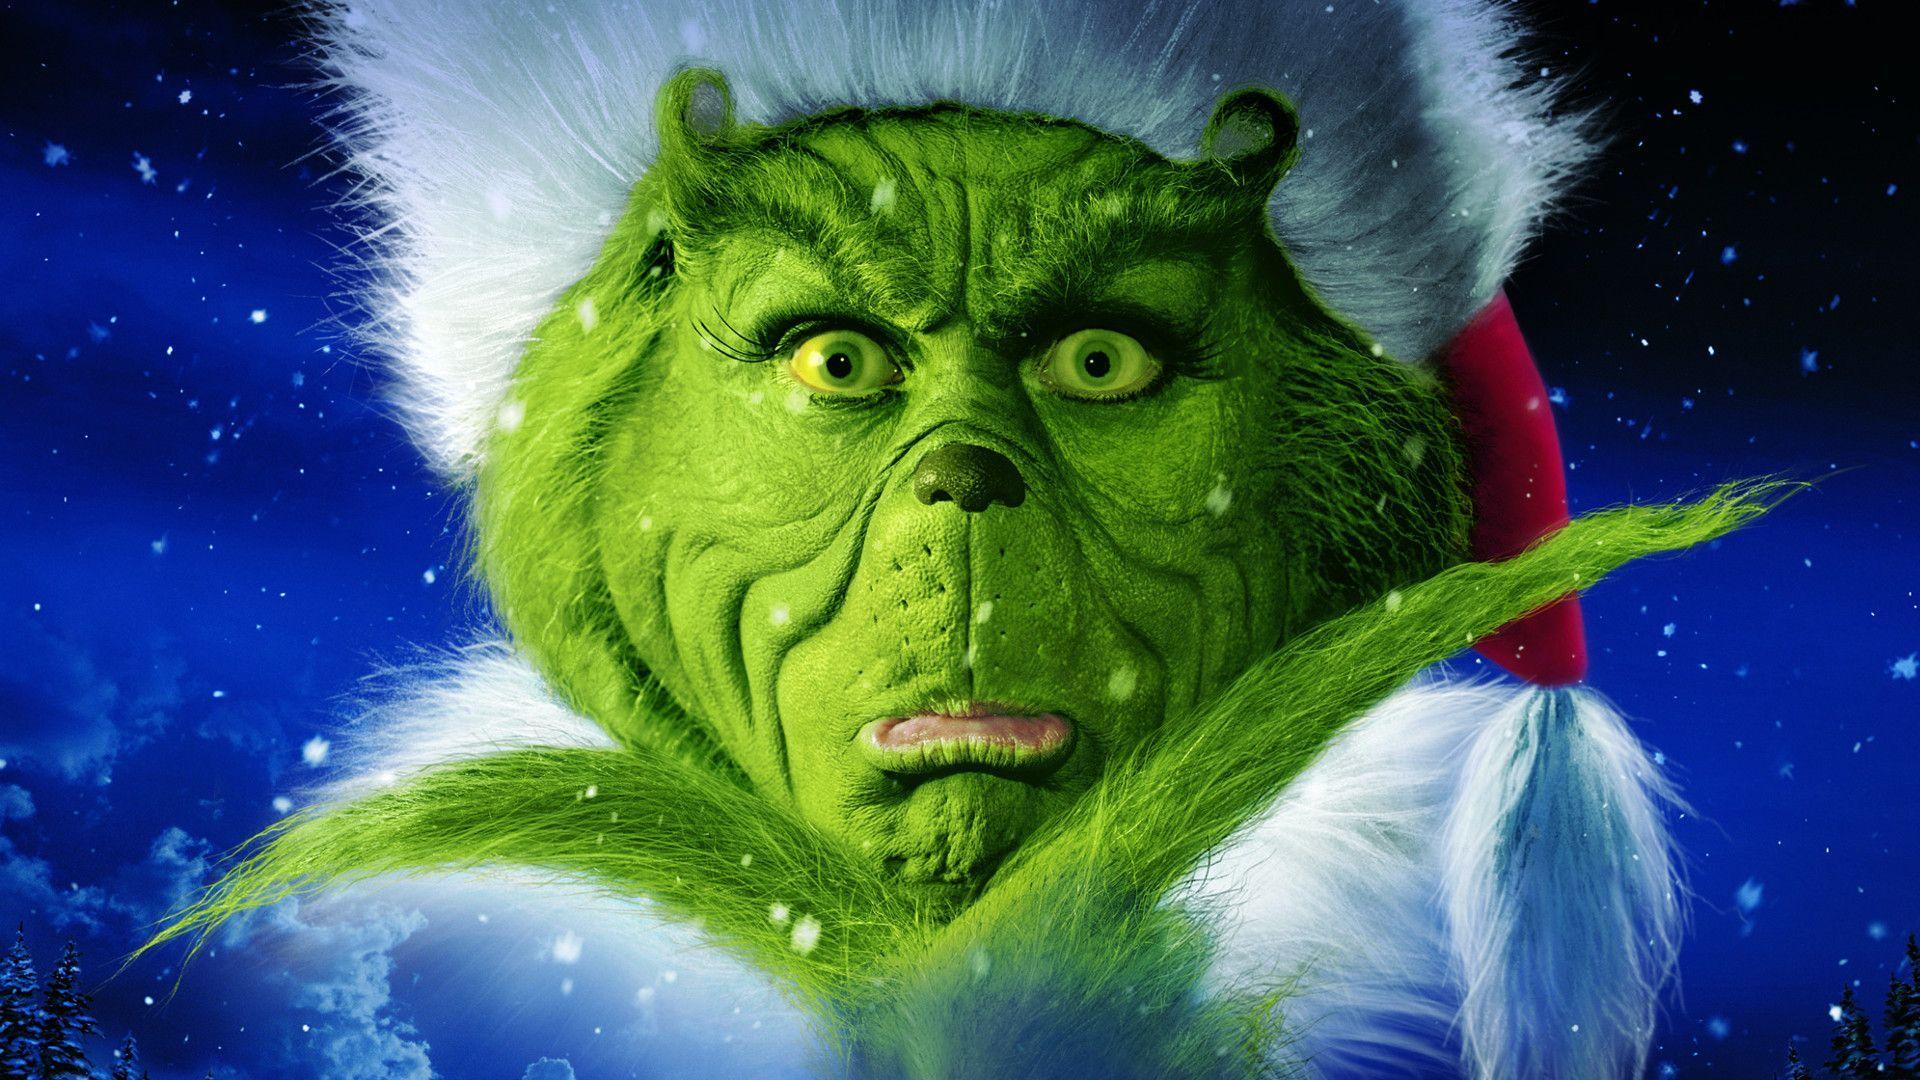 Nếu bạn muốn cười tẹt ga vào mùa Giáng sinh, hãy xem hình ảnh về Grinch hài hước này! Với vẻ mặt lém lỉnh và đáng yêu, Grinch chắc chắn sẽ làm bạn cười đến ngất trời. Hãy chuẩn bị sẵn cho những trận cười phá lên cùng Grinch nào!